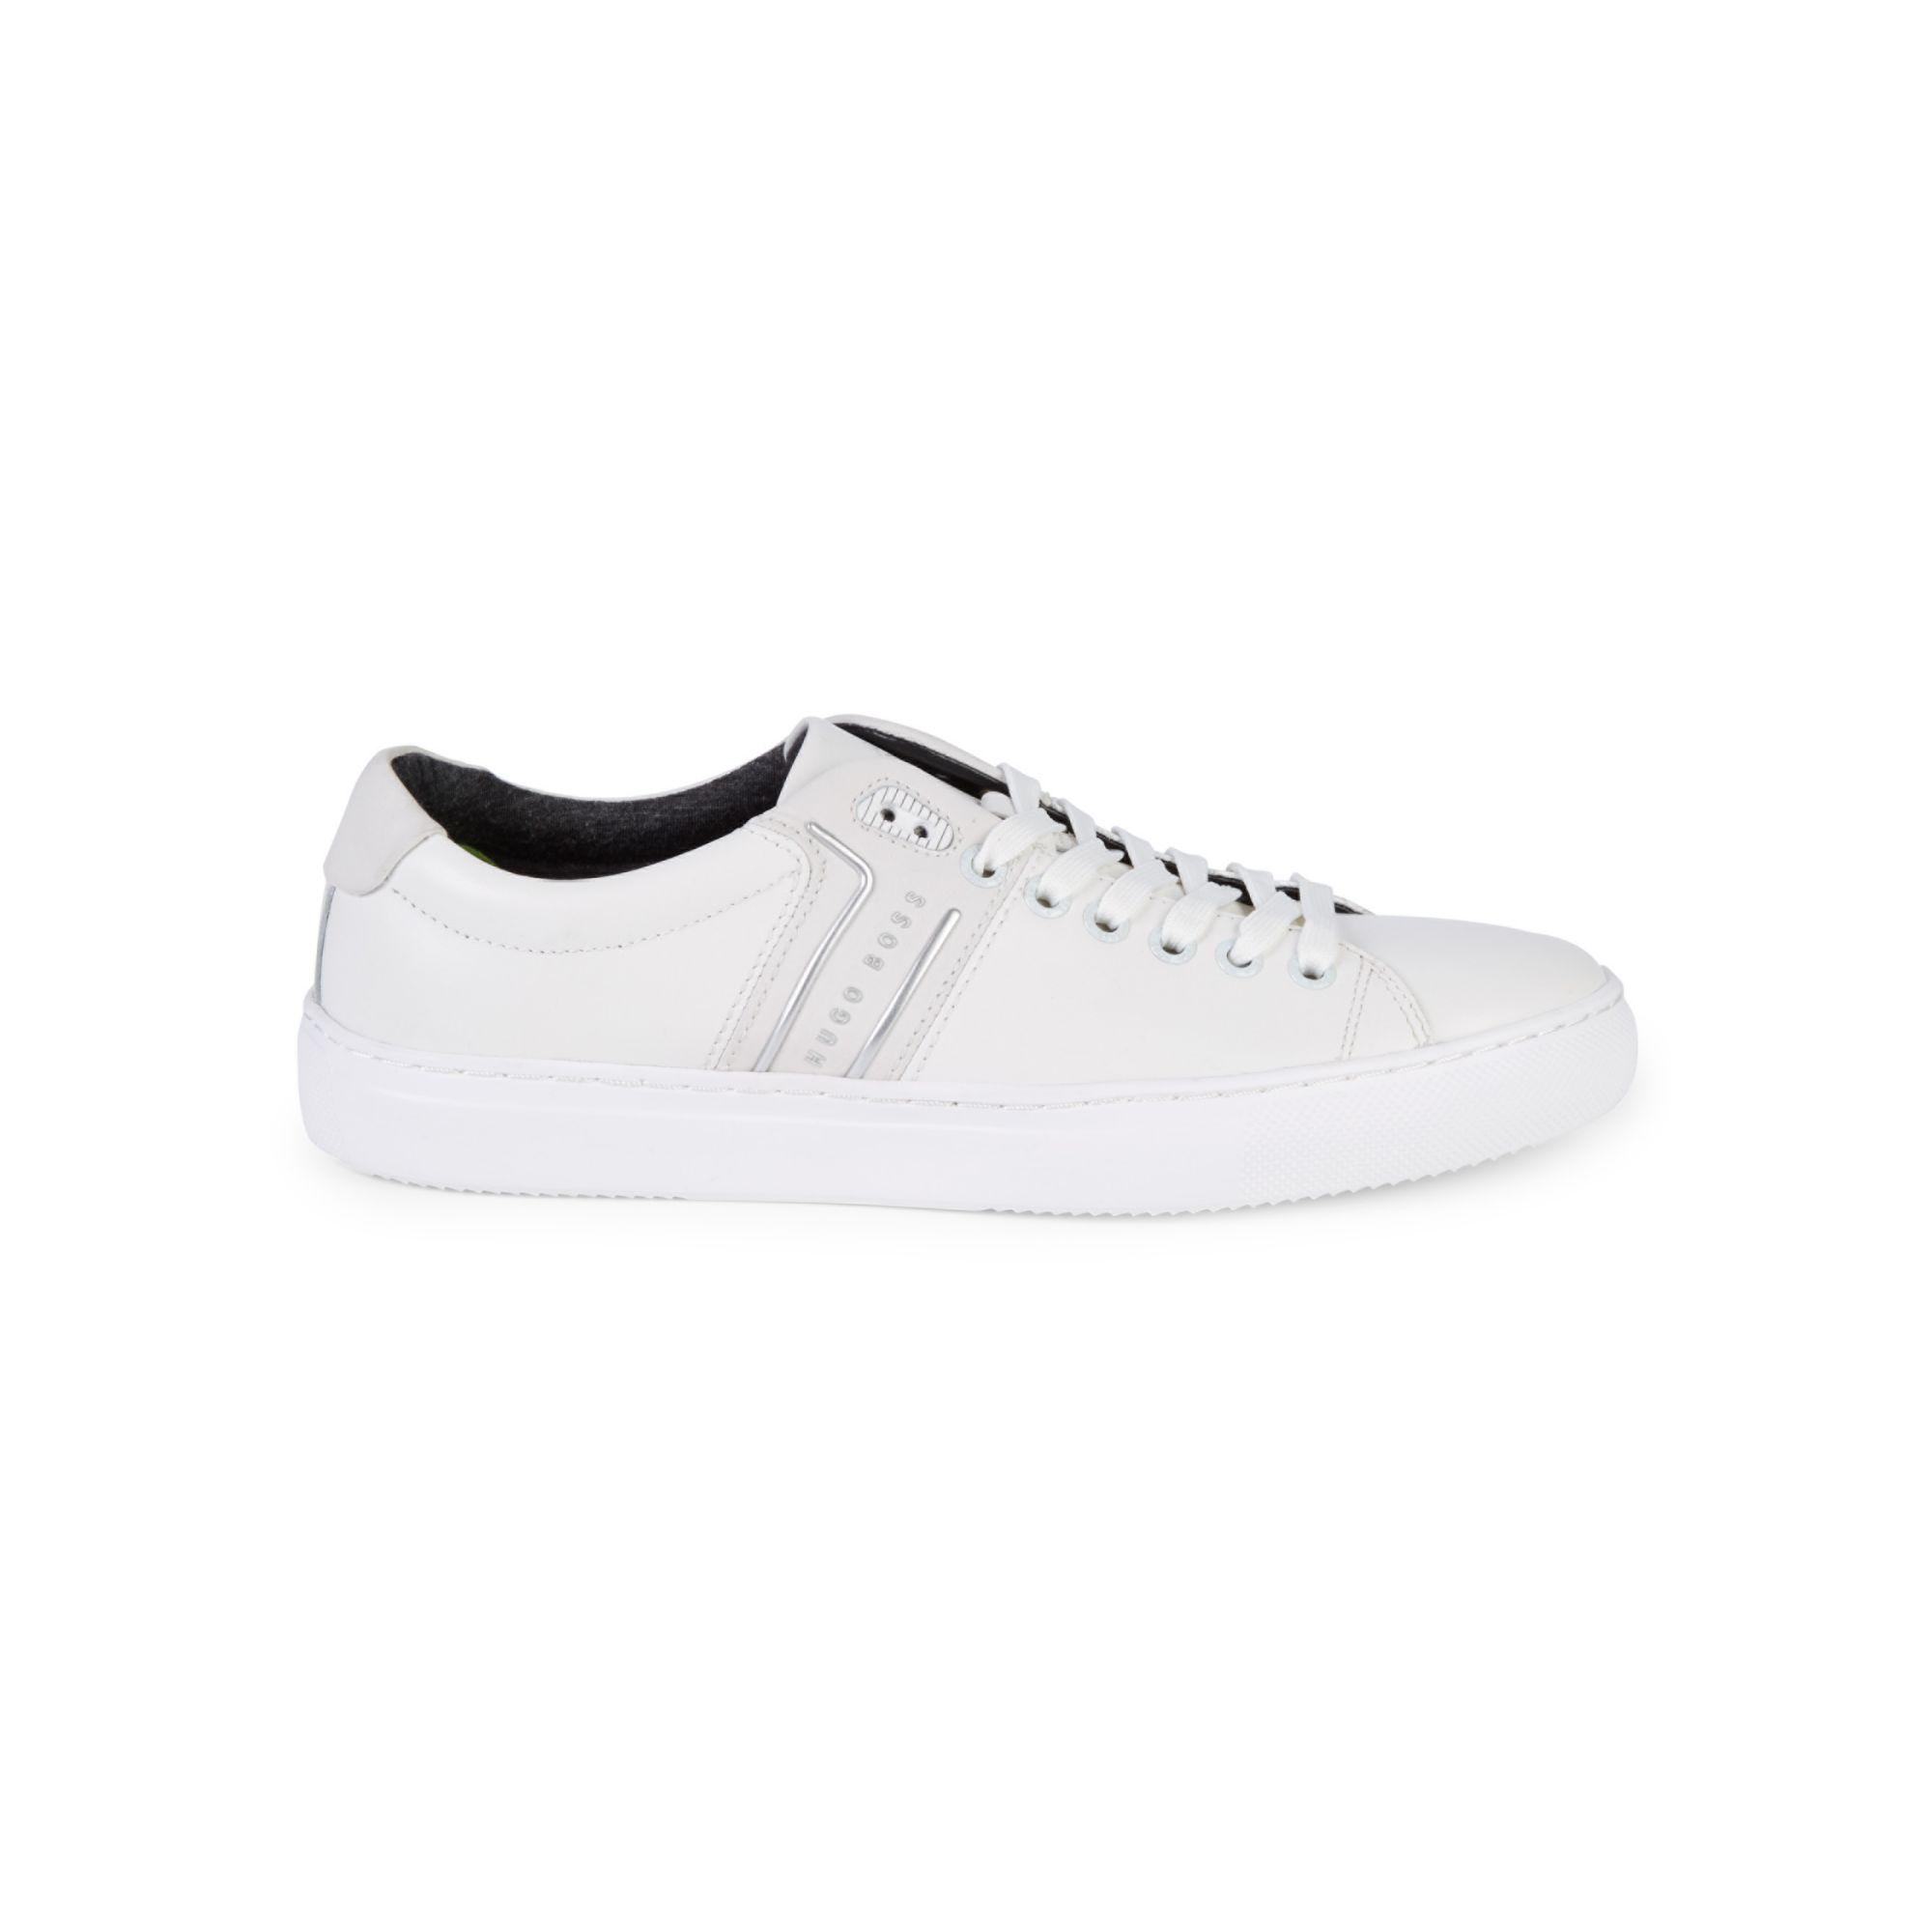 BOSS by HUGO BOSS Enlight Tennis Sneakers White for Men Lyst